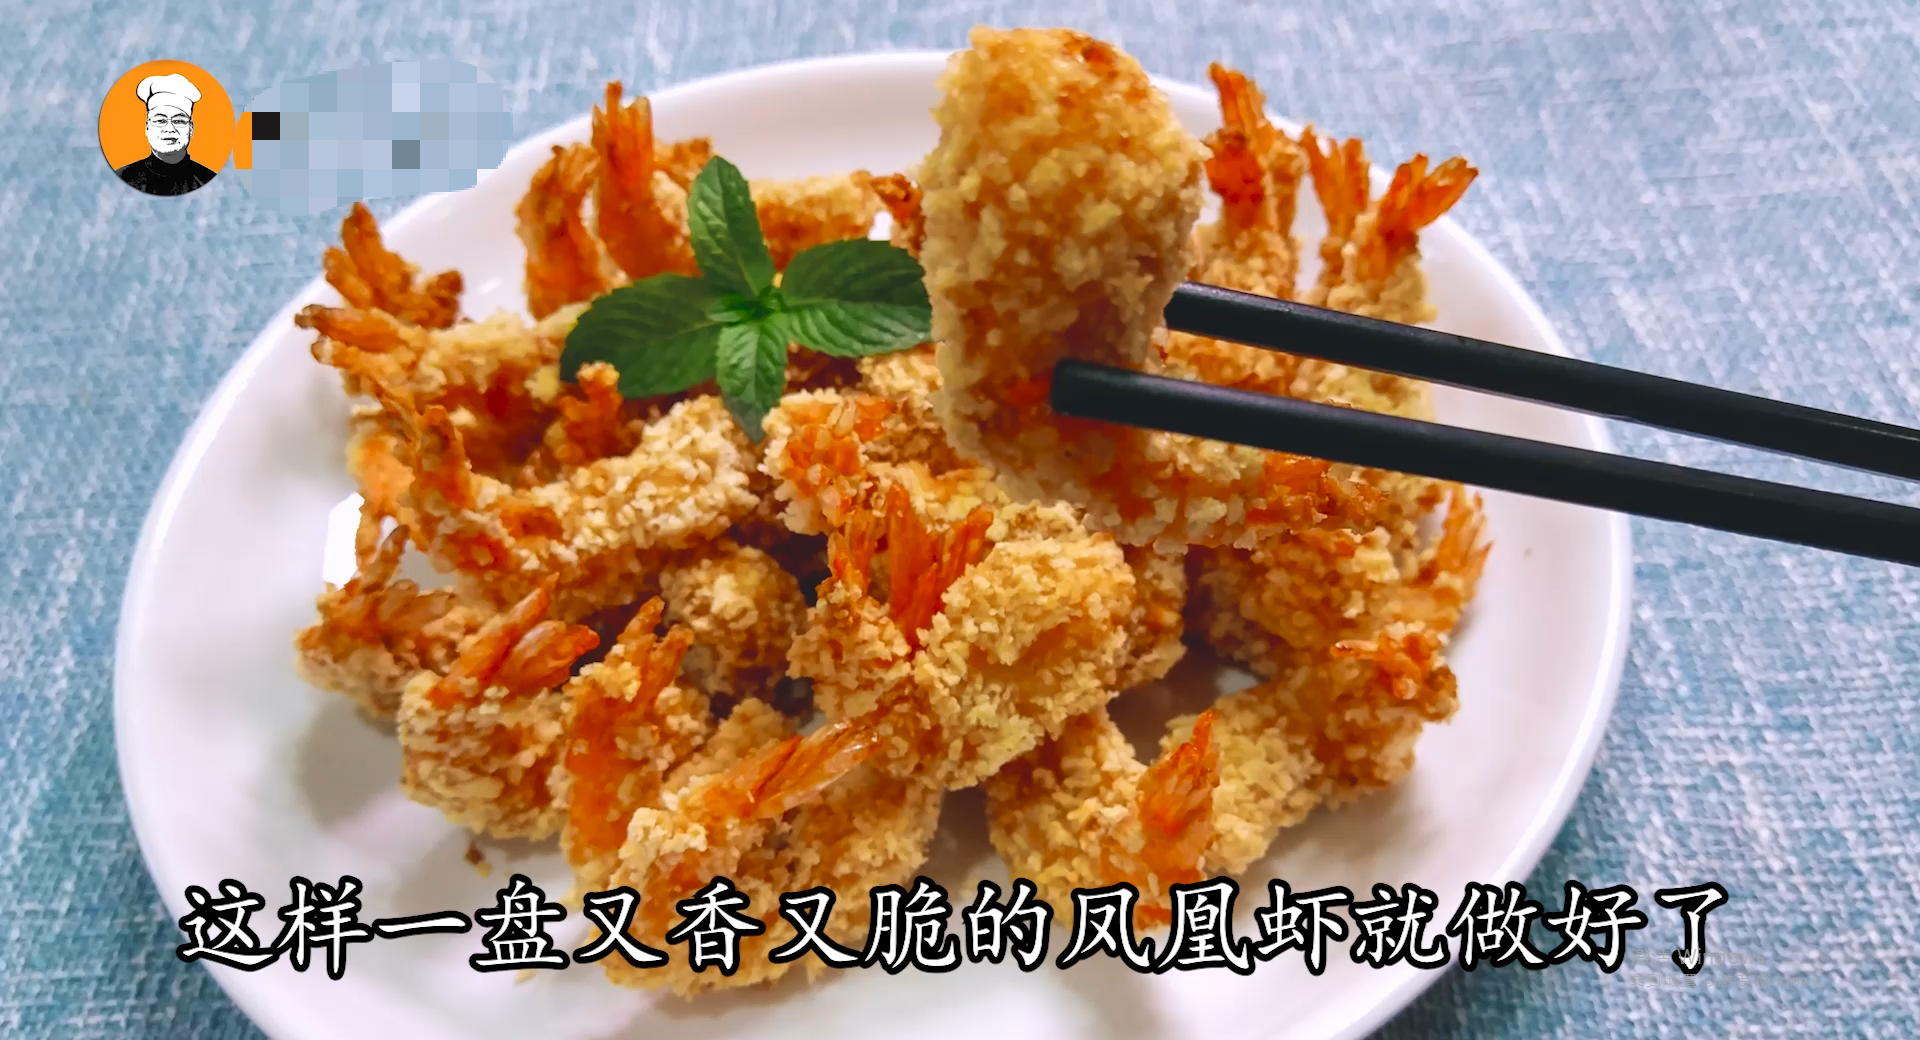 基围虾学会这样做，金黄酥脆，简单易学，饭店都吃不到的美味